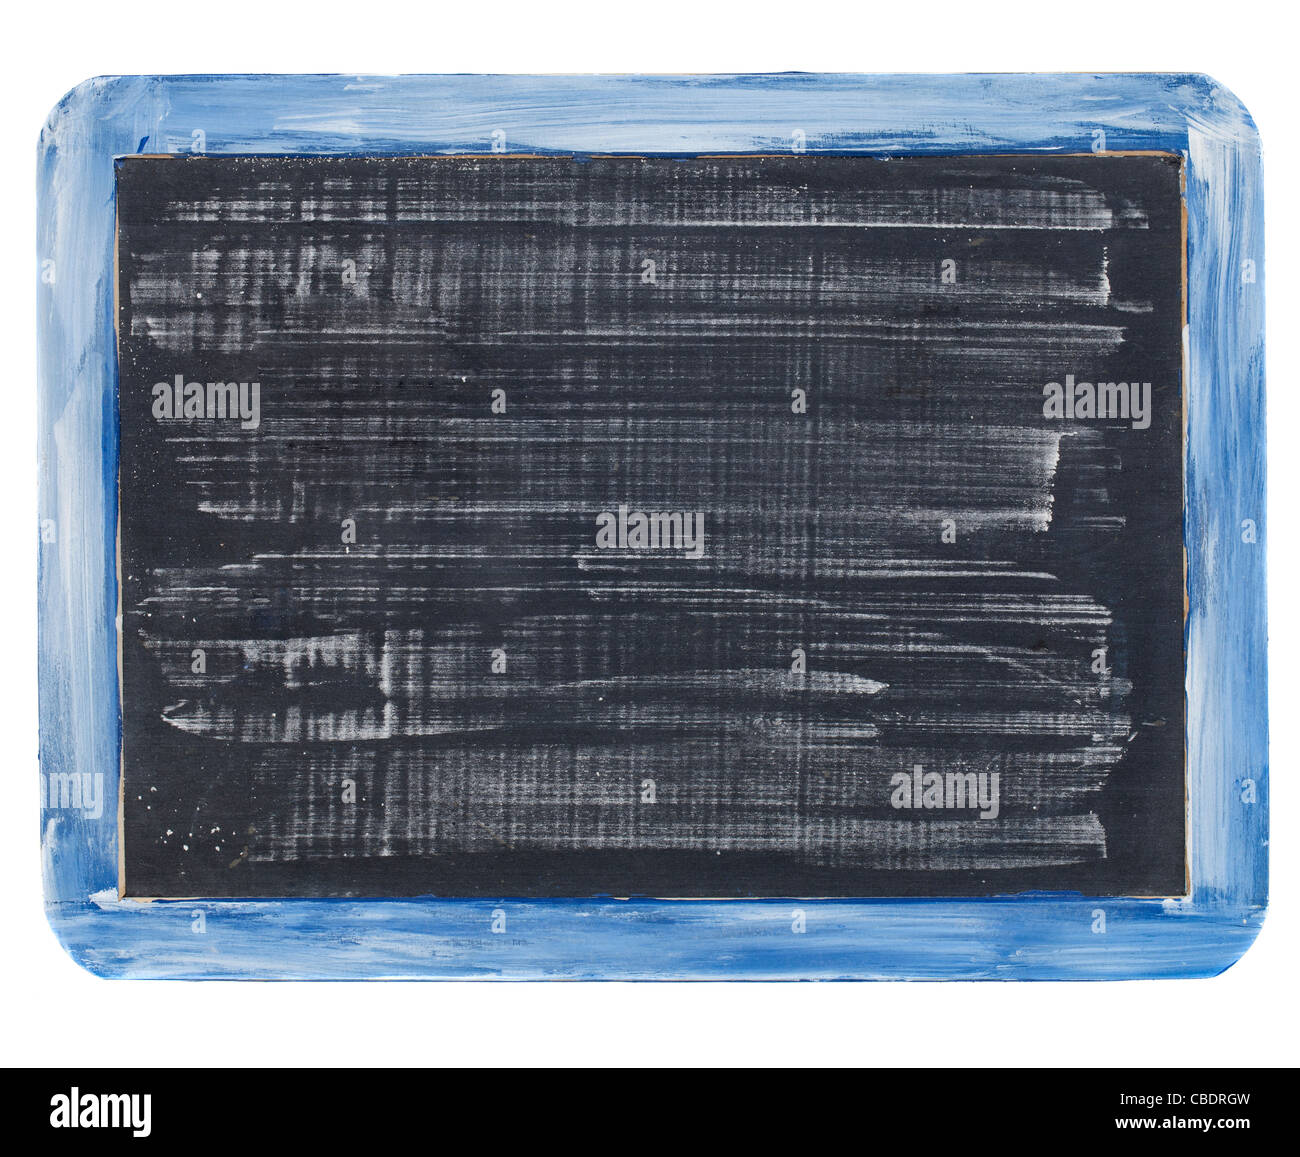 Petit tableau noir ardoise grunge avec craie blanche, texture rugueuse, cadre en bois bleu, isolated on white Banque D'Images